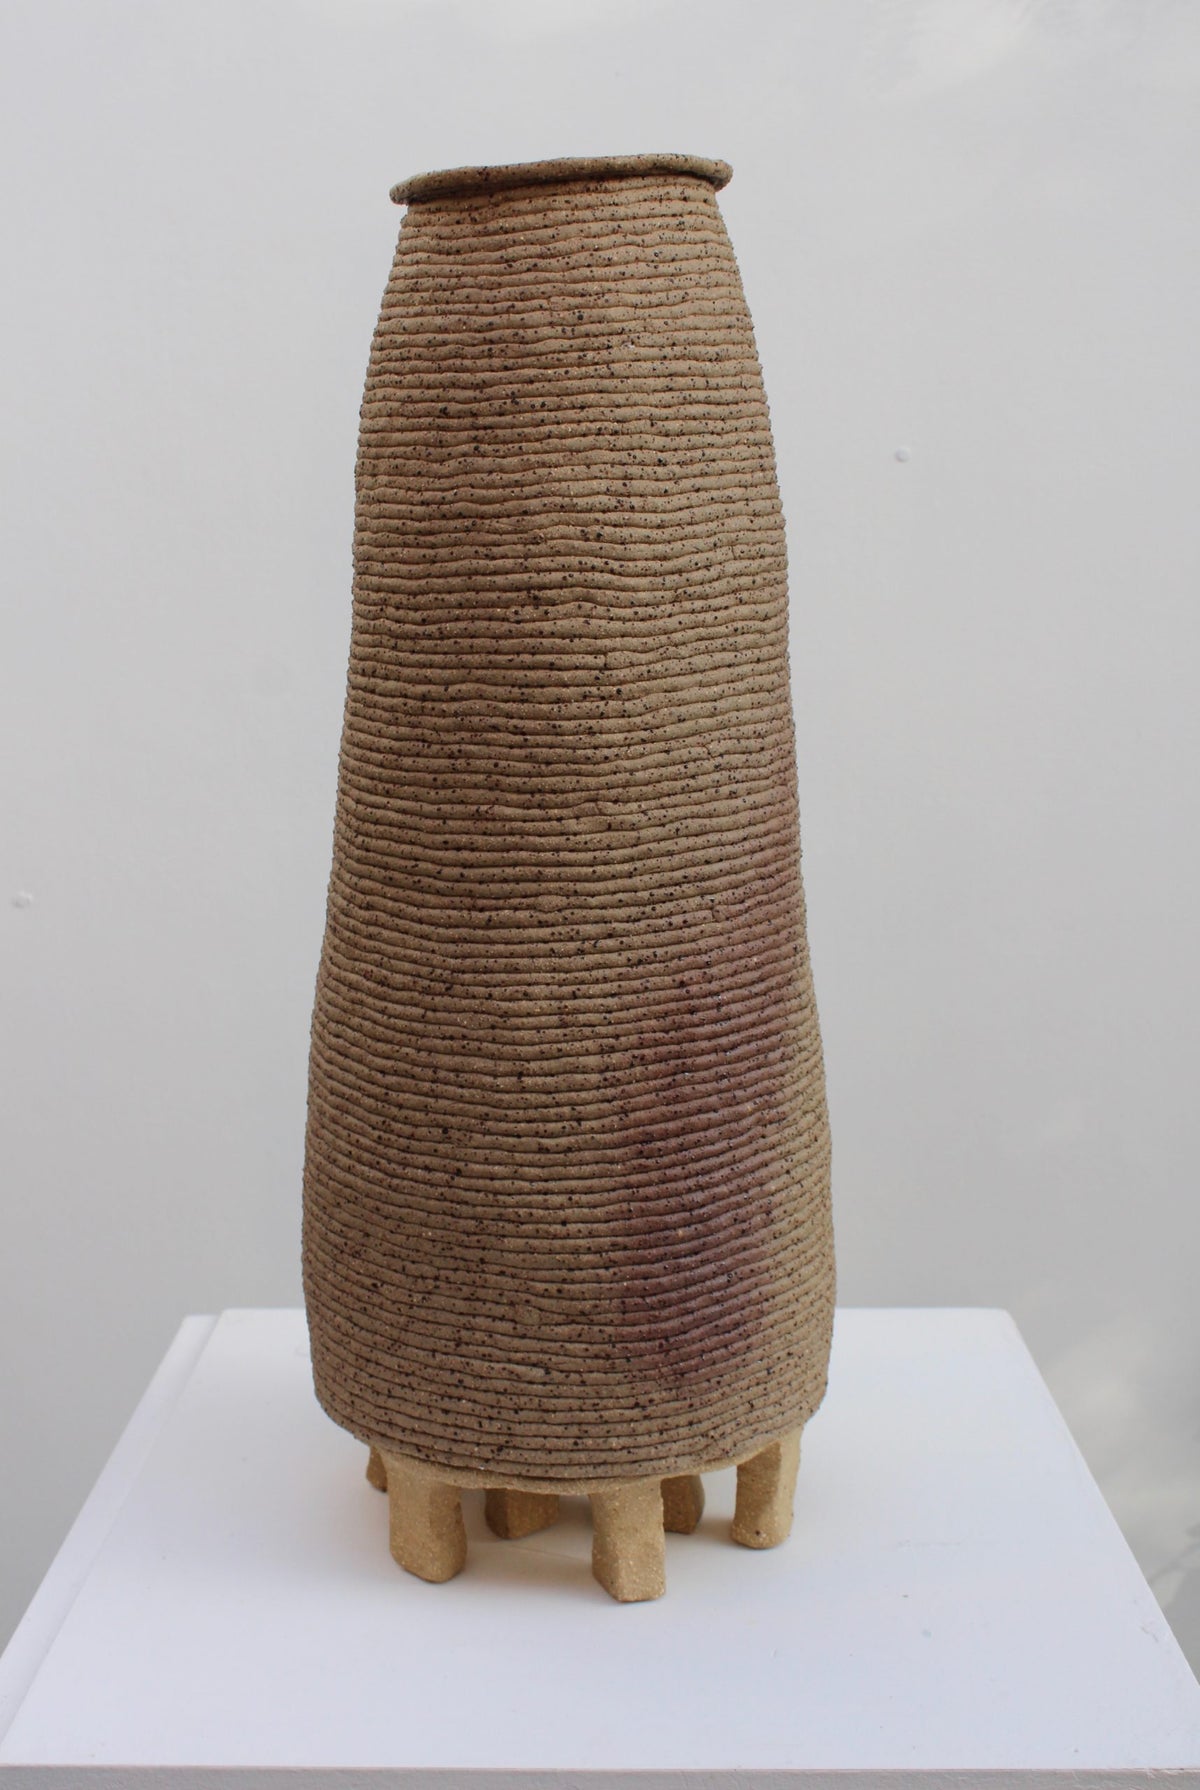 Ripple Vase II with Plinth